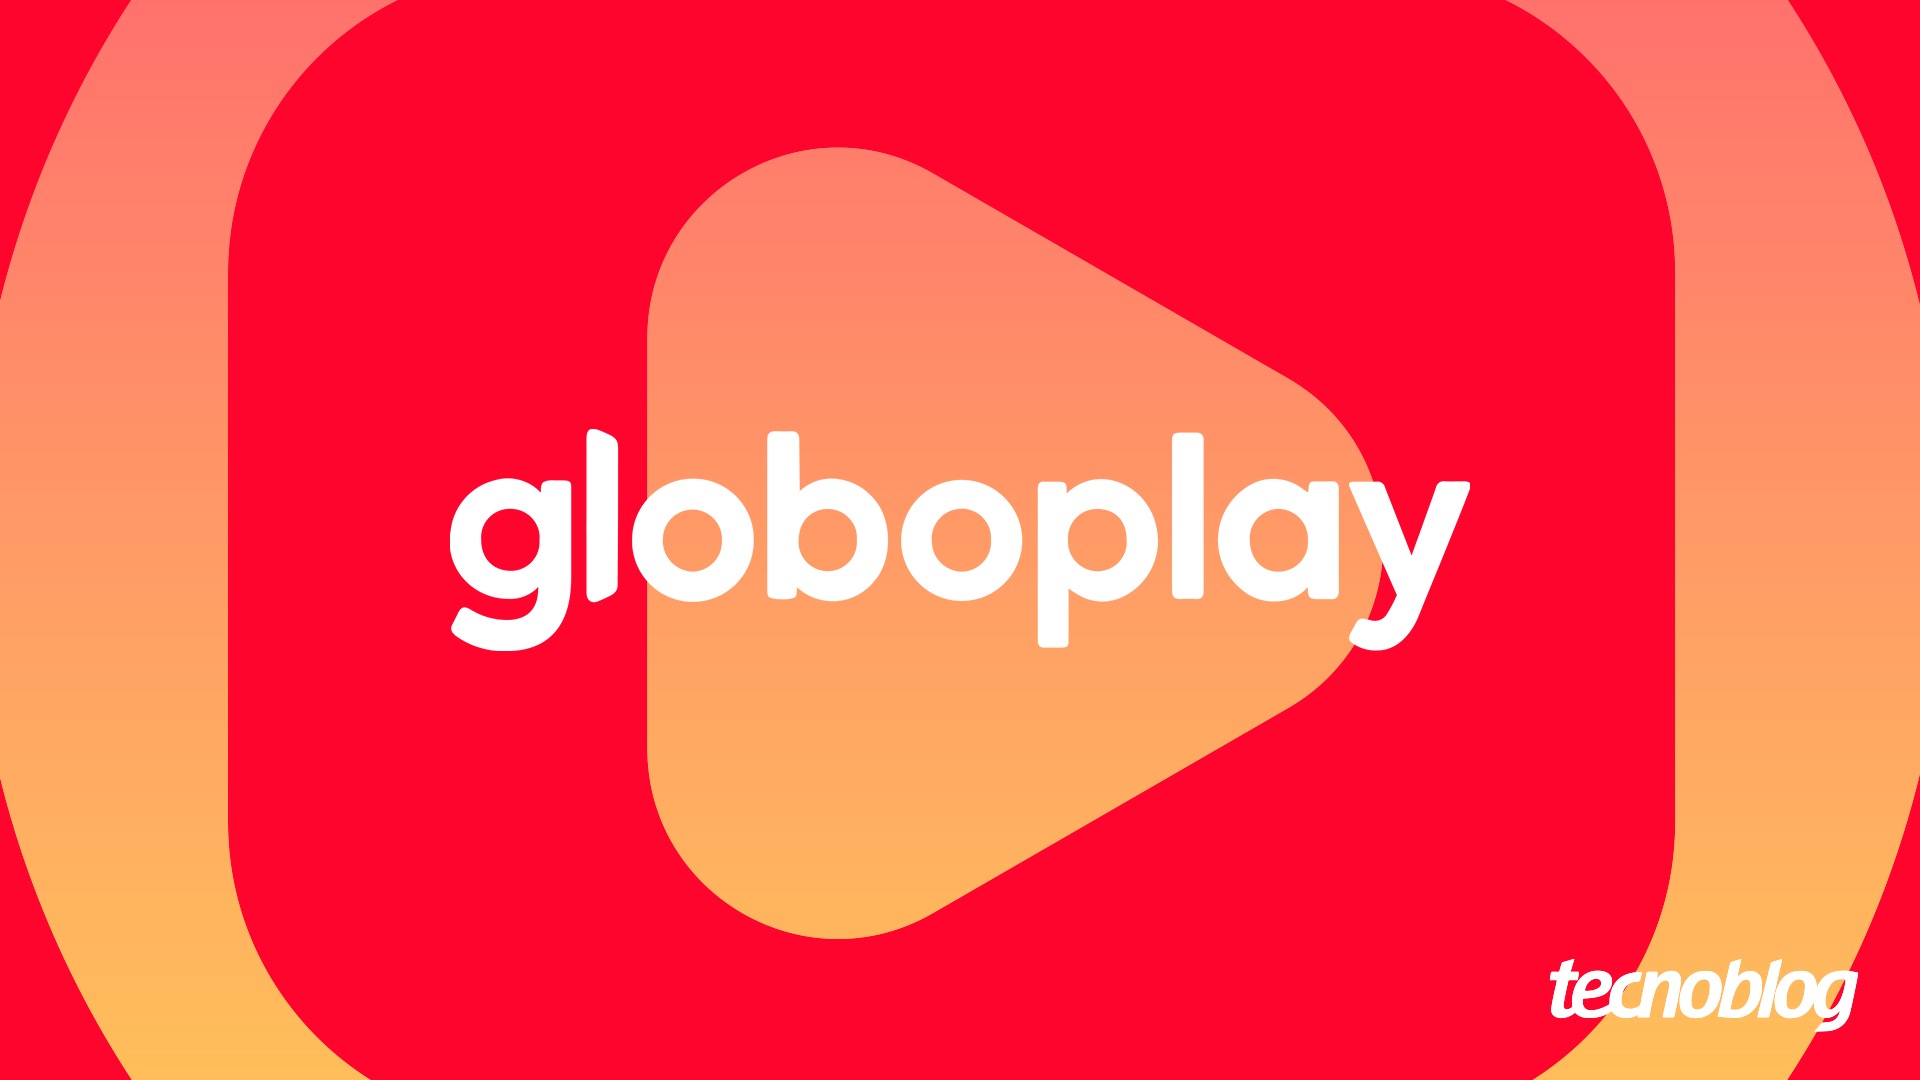 Como pagar assinatura globoplay bloqueada sem fazer outra assinatura mais  cara. - Comunidade Google Play